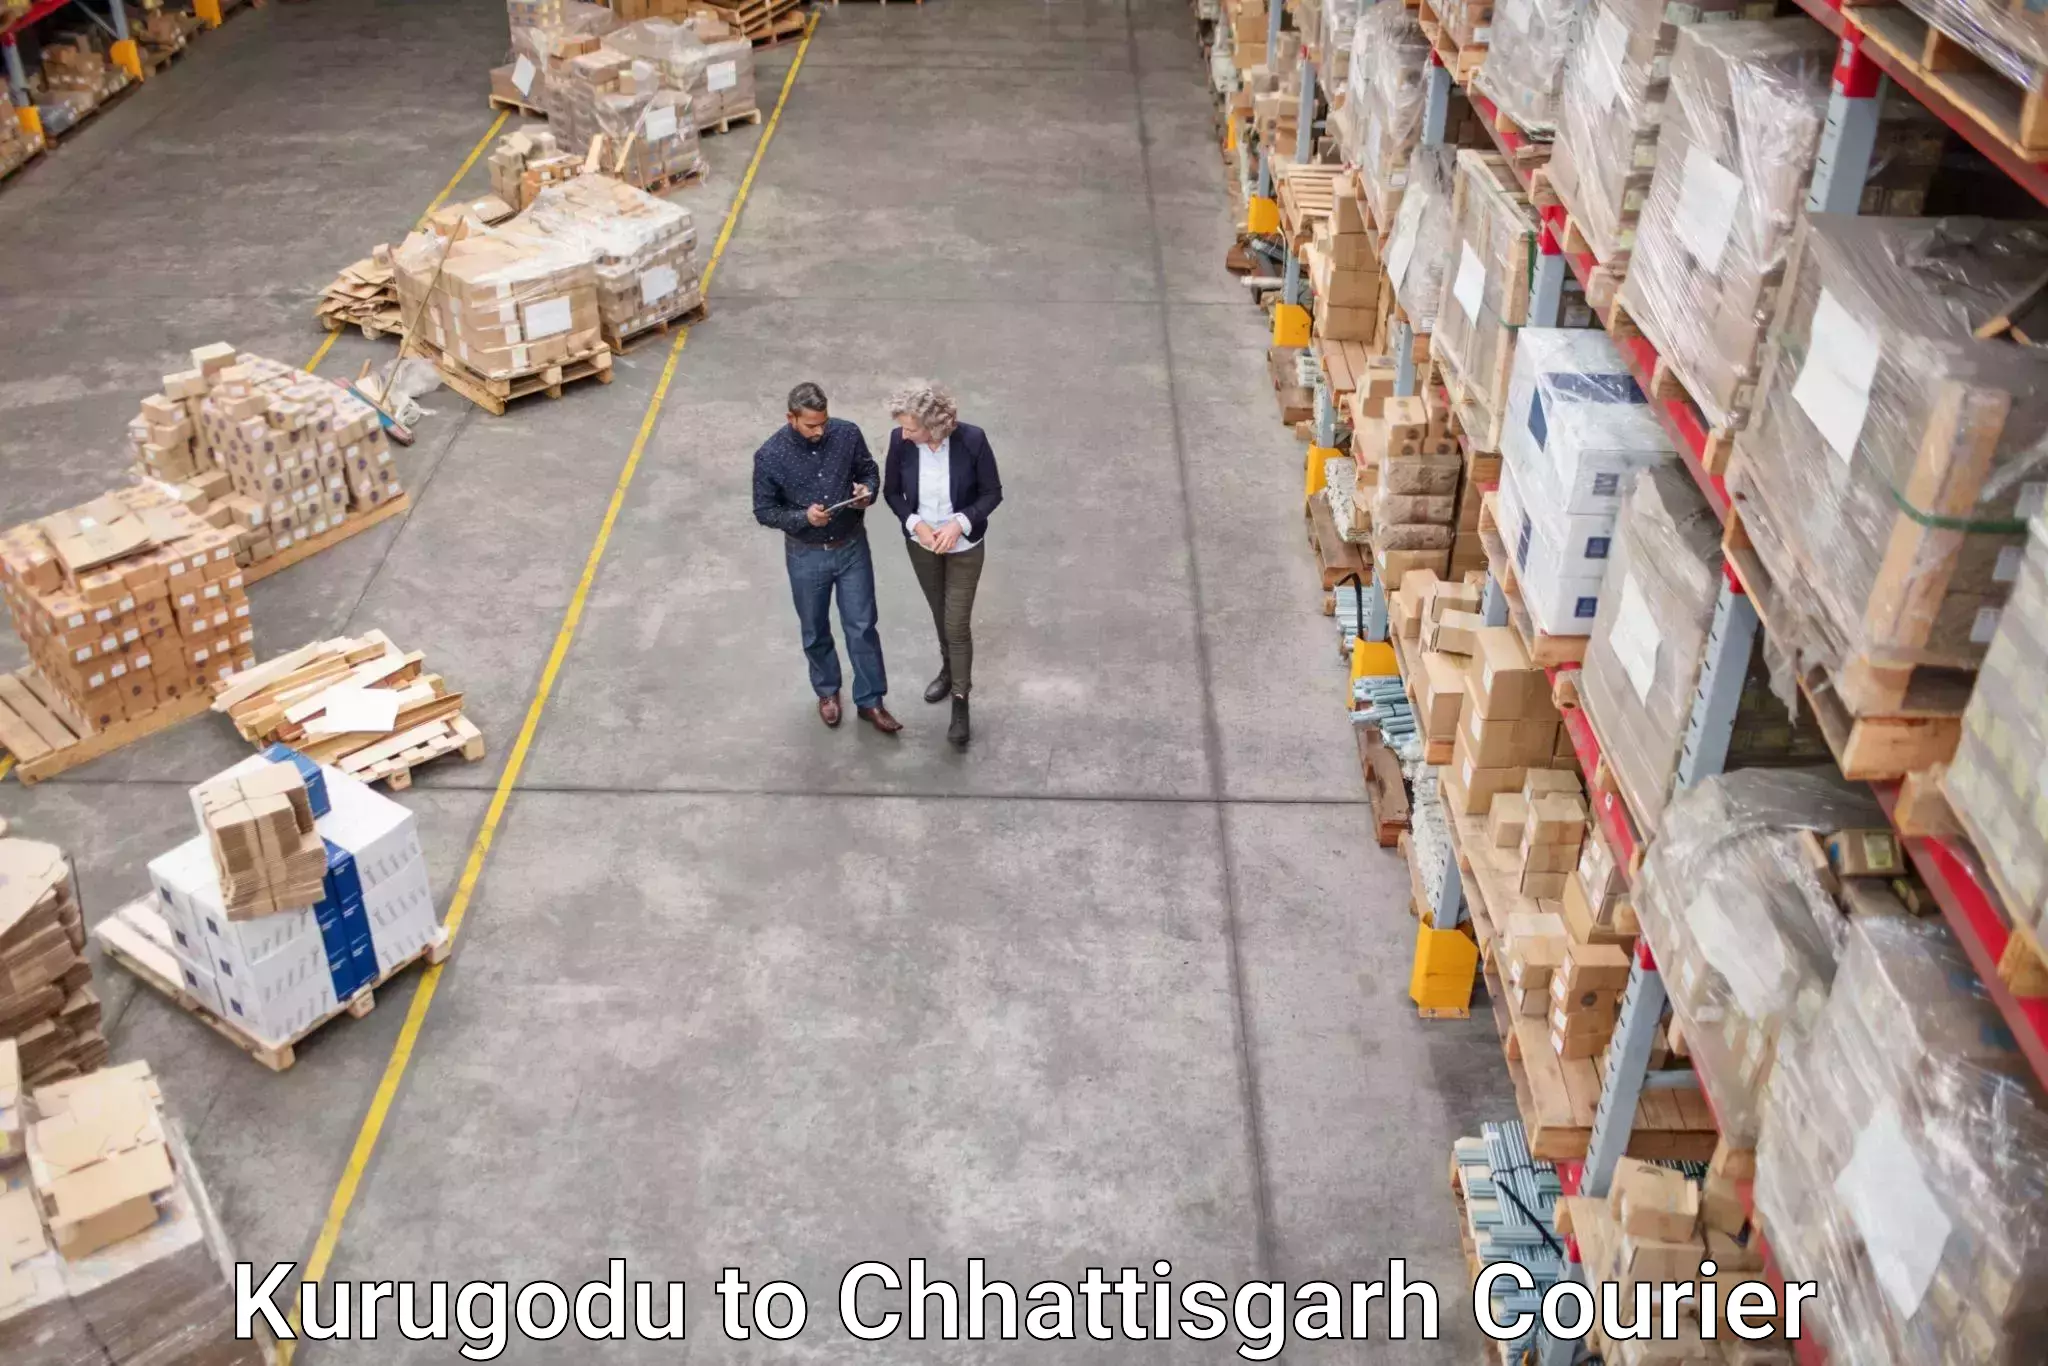 Digital courier platforms Kurugodu to Raigarh Chhattisgarh